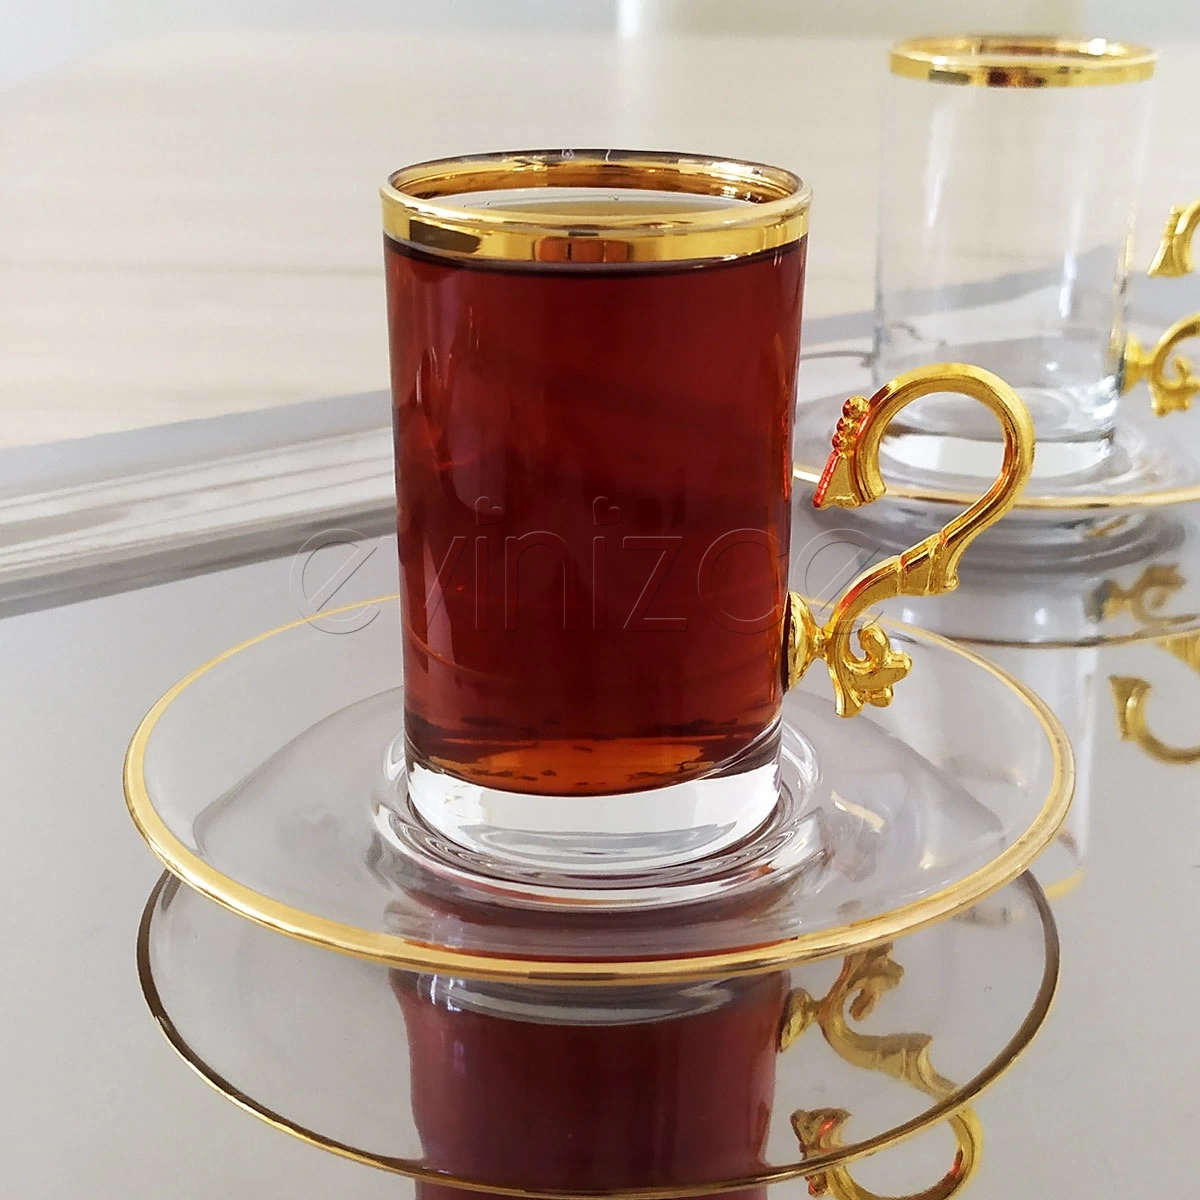 Evinizce Kulplu Yaldızlı Çay Fincanı -6 Kişilik